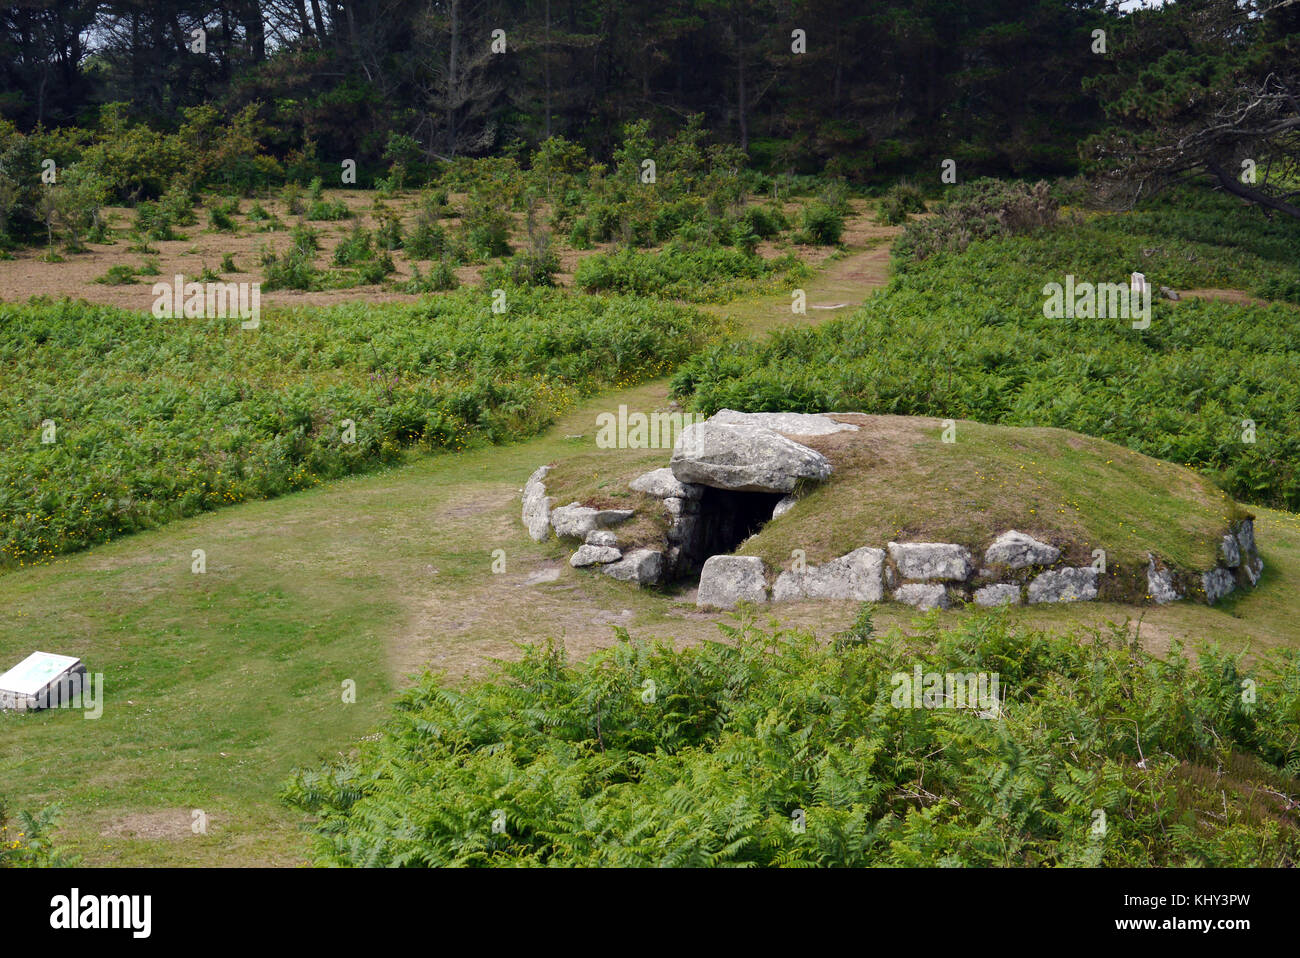 Die alten innisidgen obere Grabkammer auf der Insel St Marys in der Scilly-inseln, Großbritannien. Stockfoto